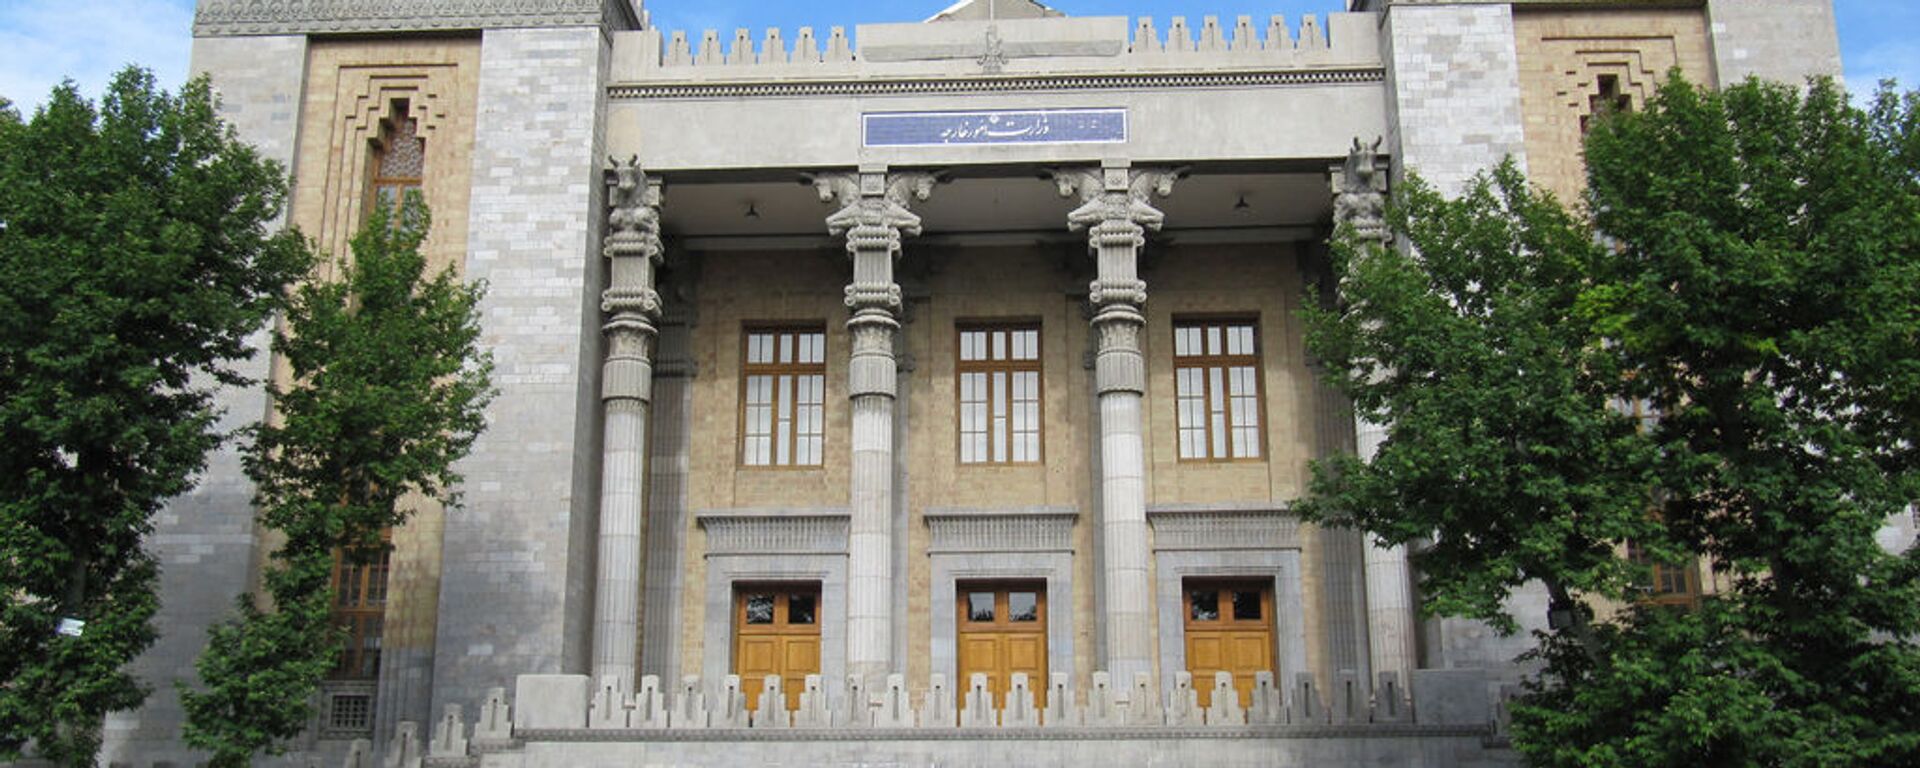 Здание МИД Исламской Республики Иран - Sputnik Армения, 1920, 22.06.2021